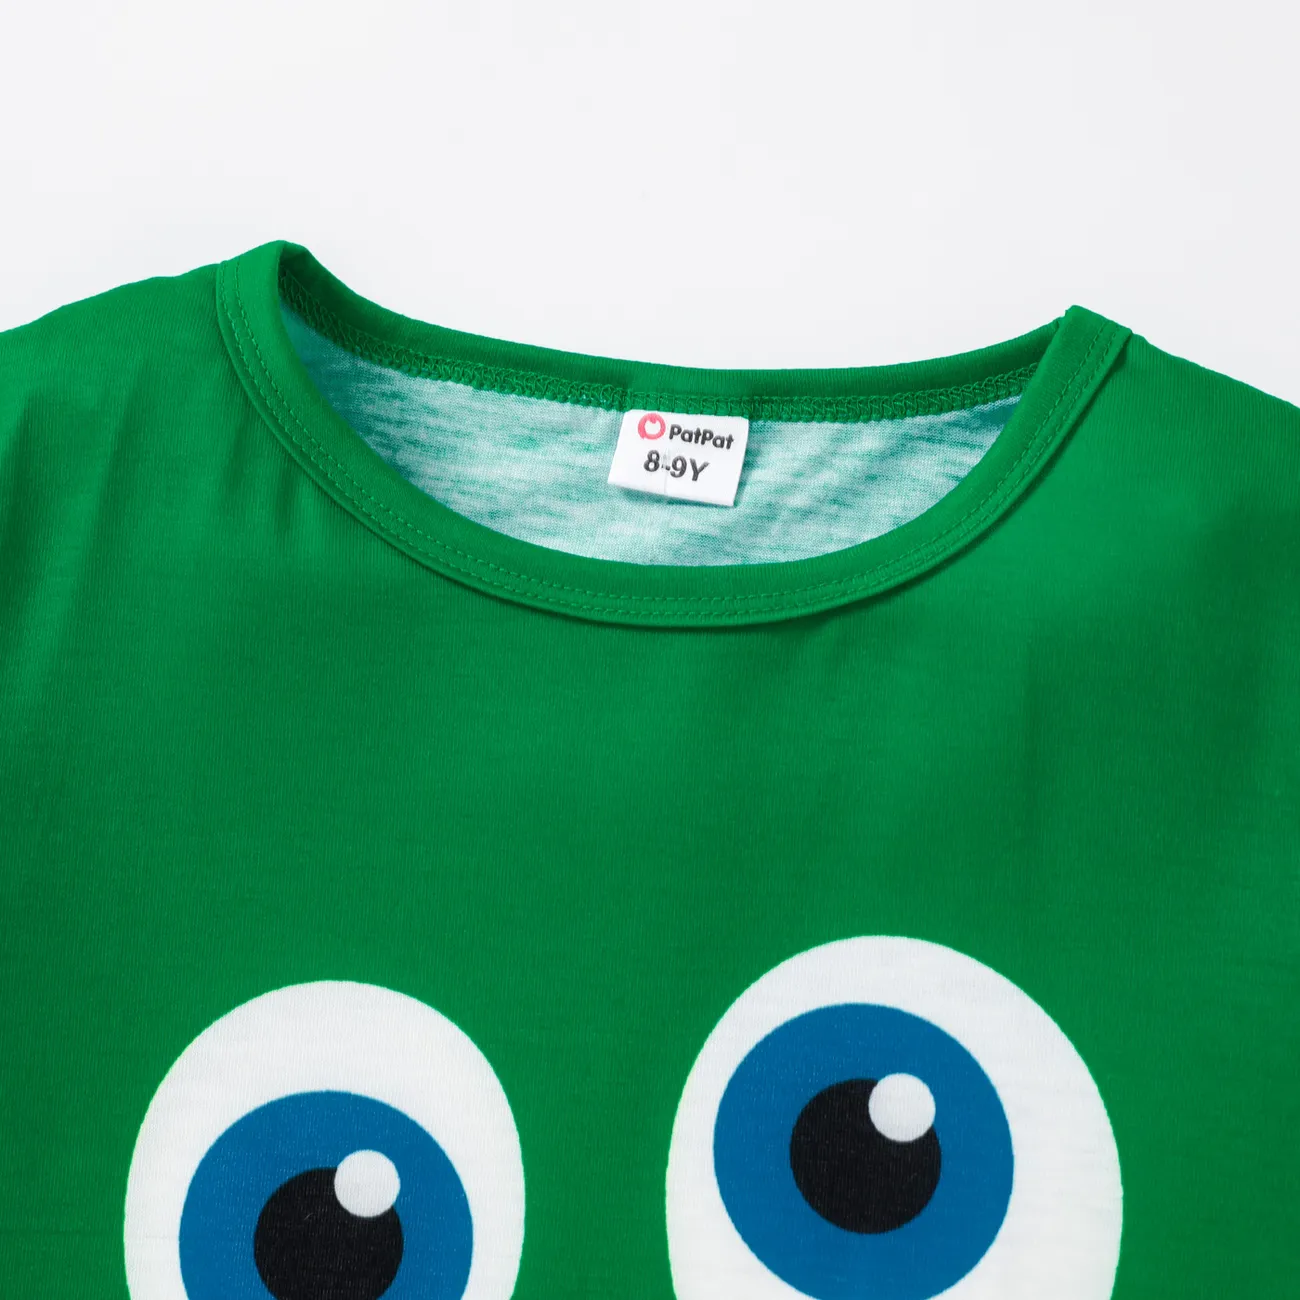 Kinder Unisex Gesichtsausdrücke Kurzärmelig T-Shirts grün big image 1